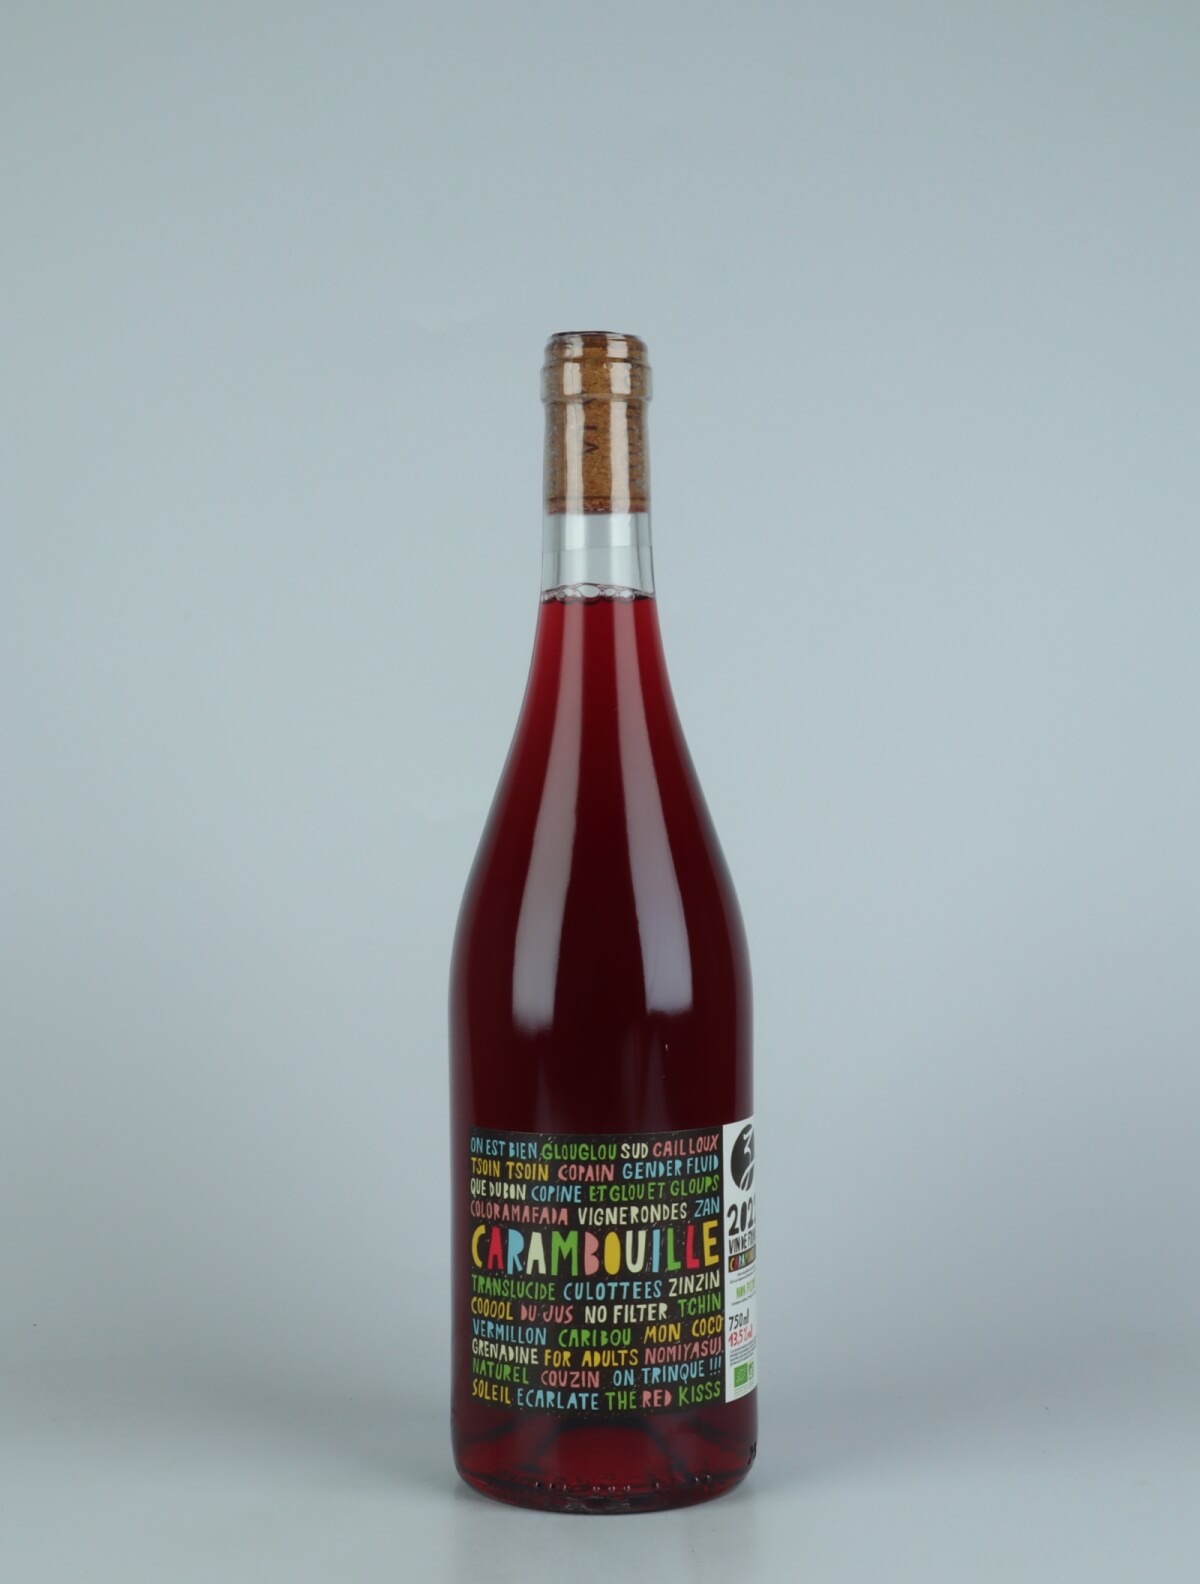 En flaske 2022 Carambouille Rødvin fra Les Vignerons d’Estézargues, Rhône i Frankrig